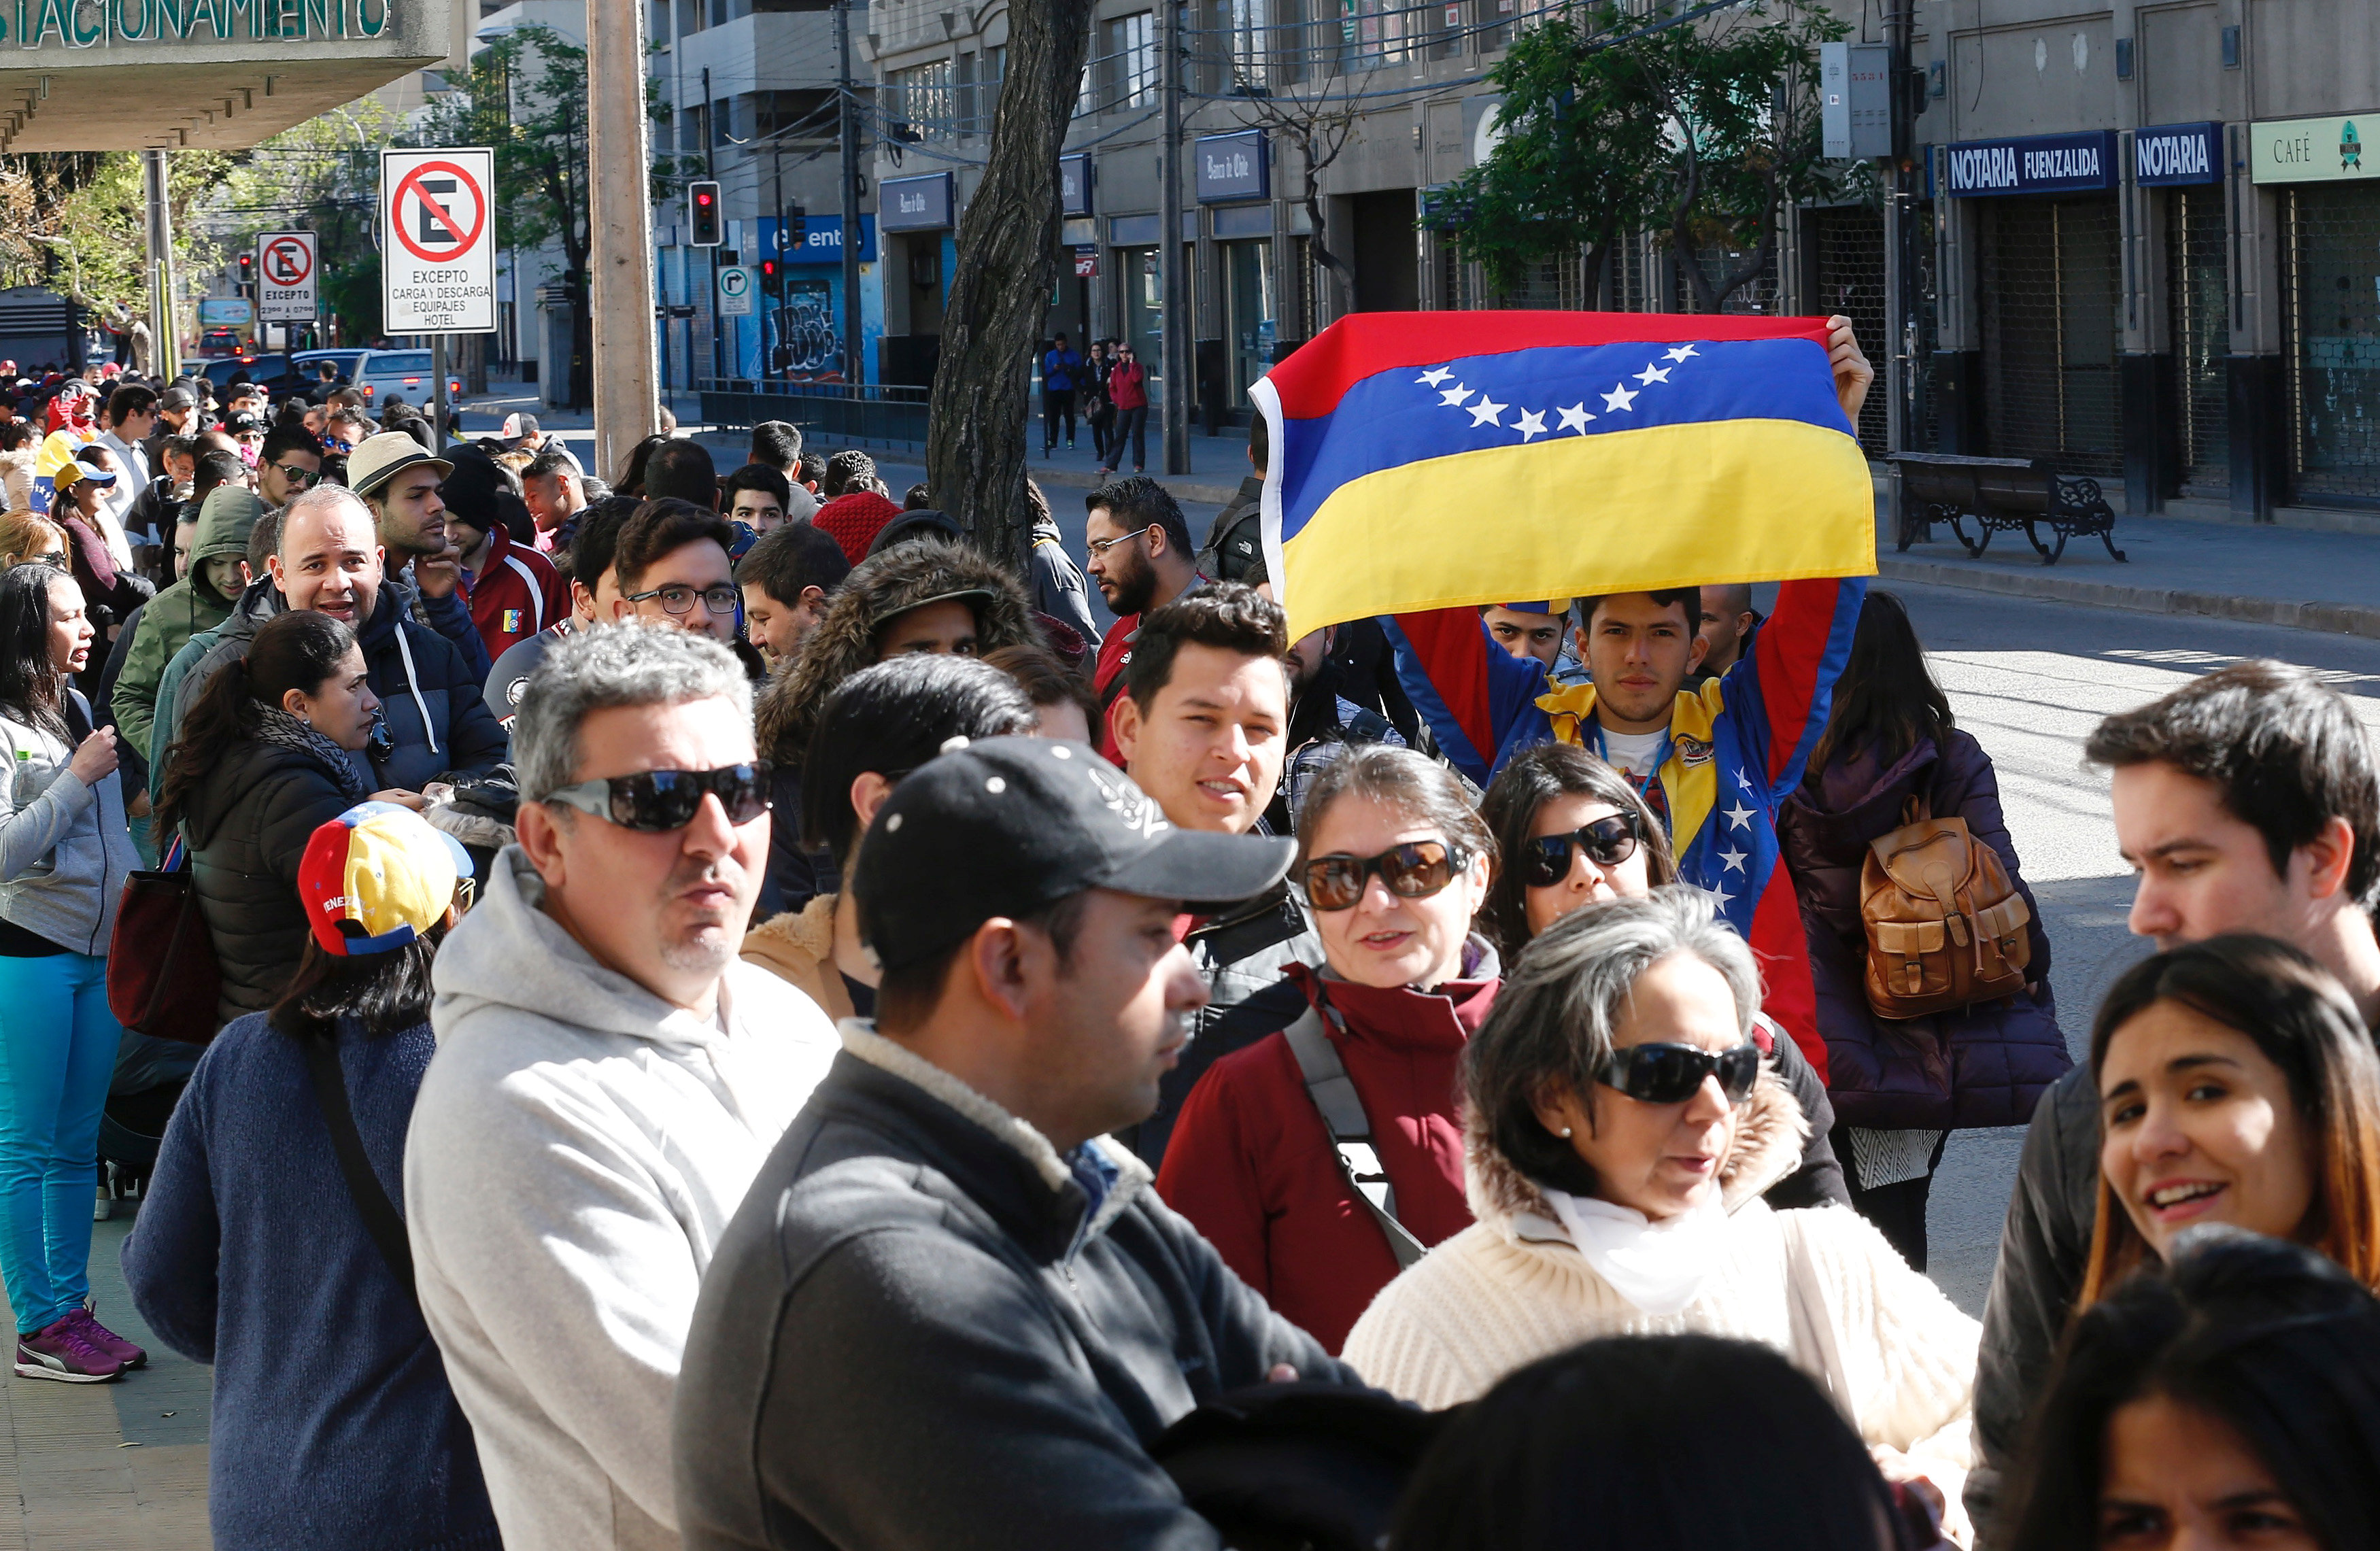 طابور من المواطنين الفنزويليين يصطفون للمشاركة فى استفتاء ضد الرئيس